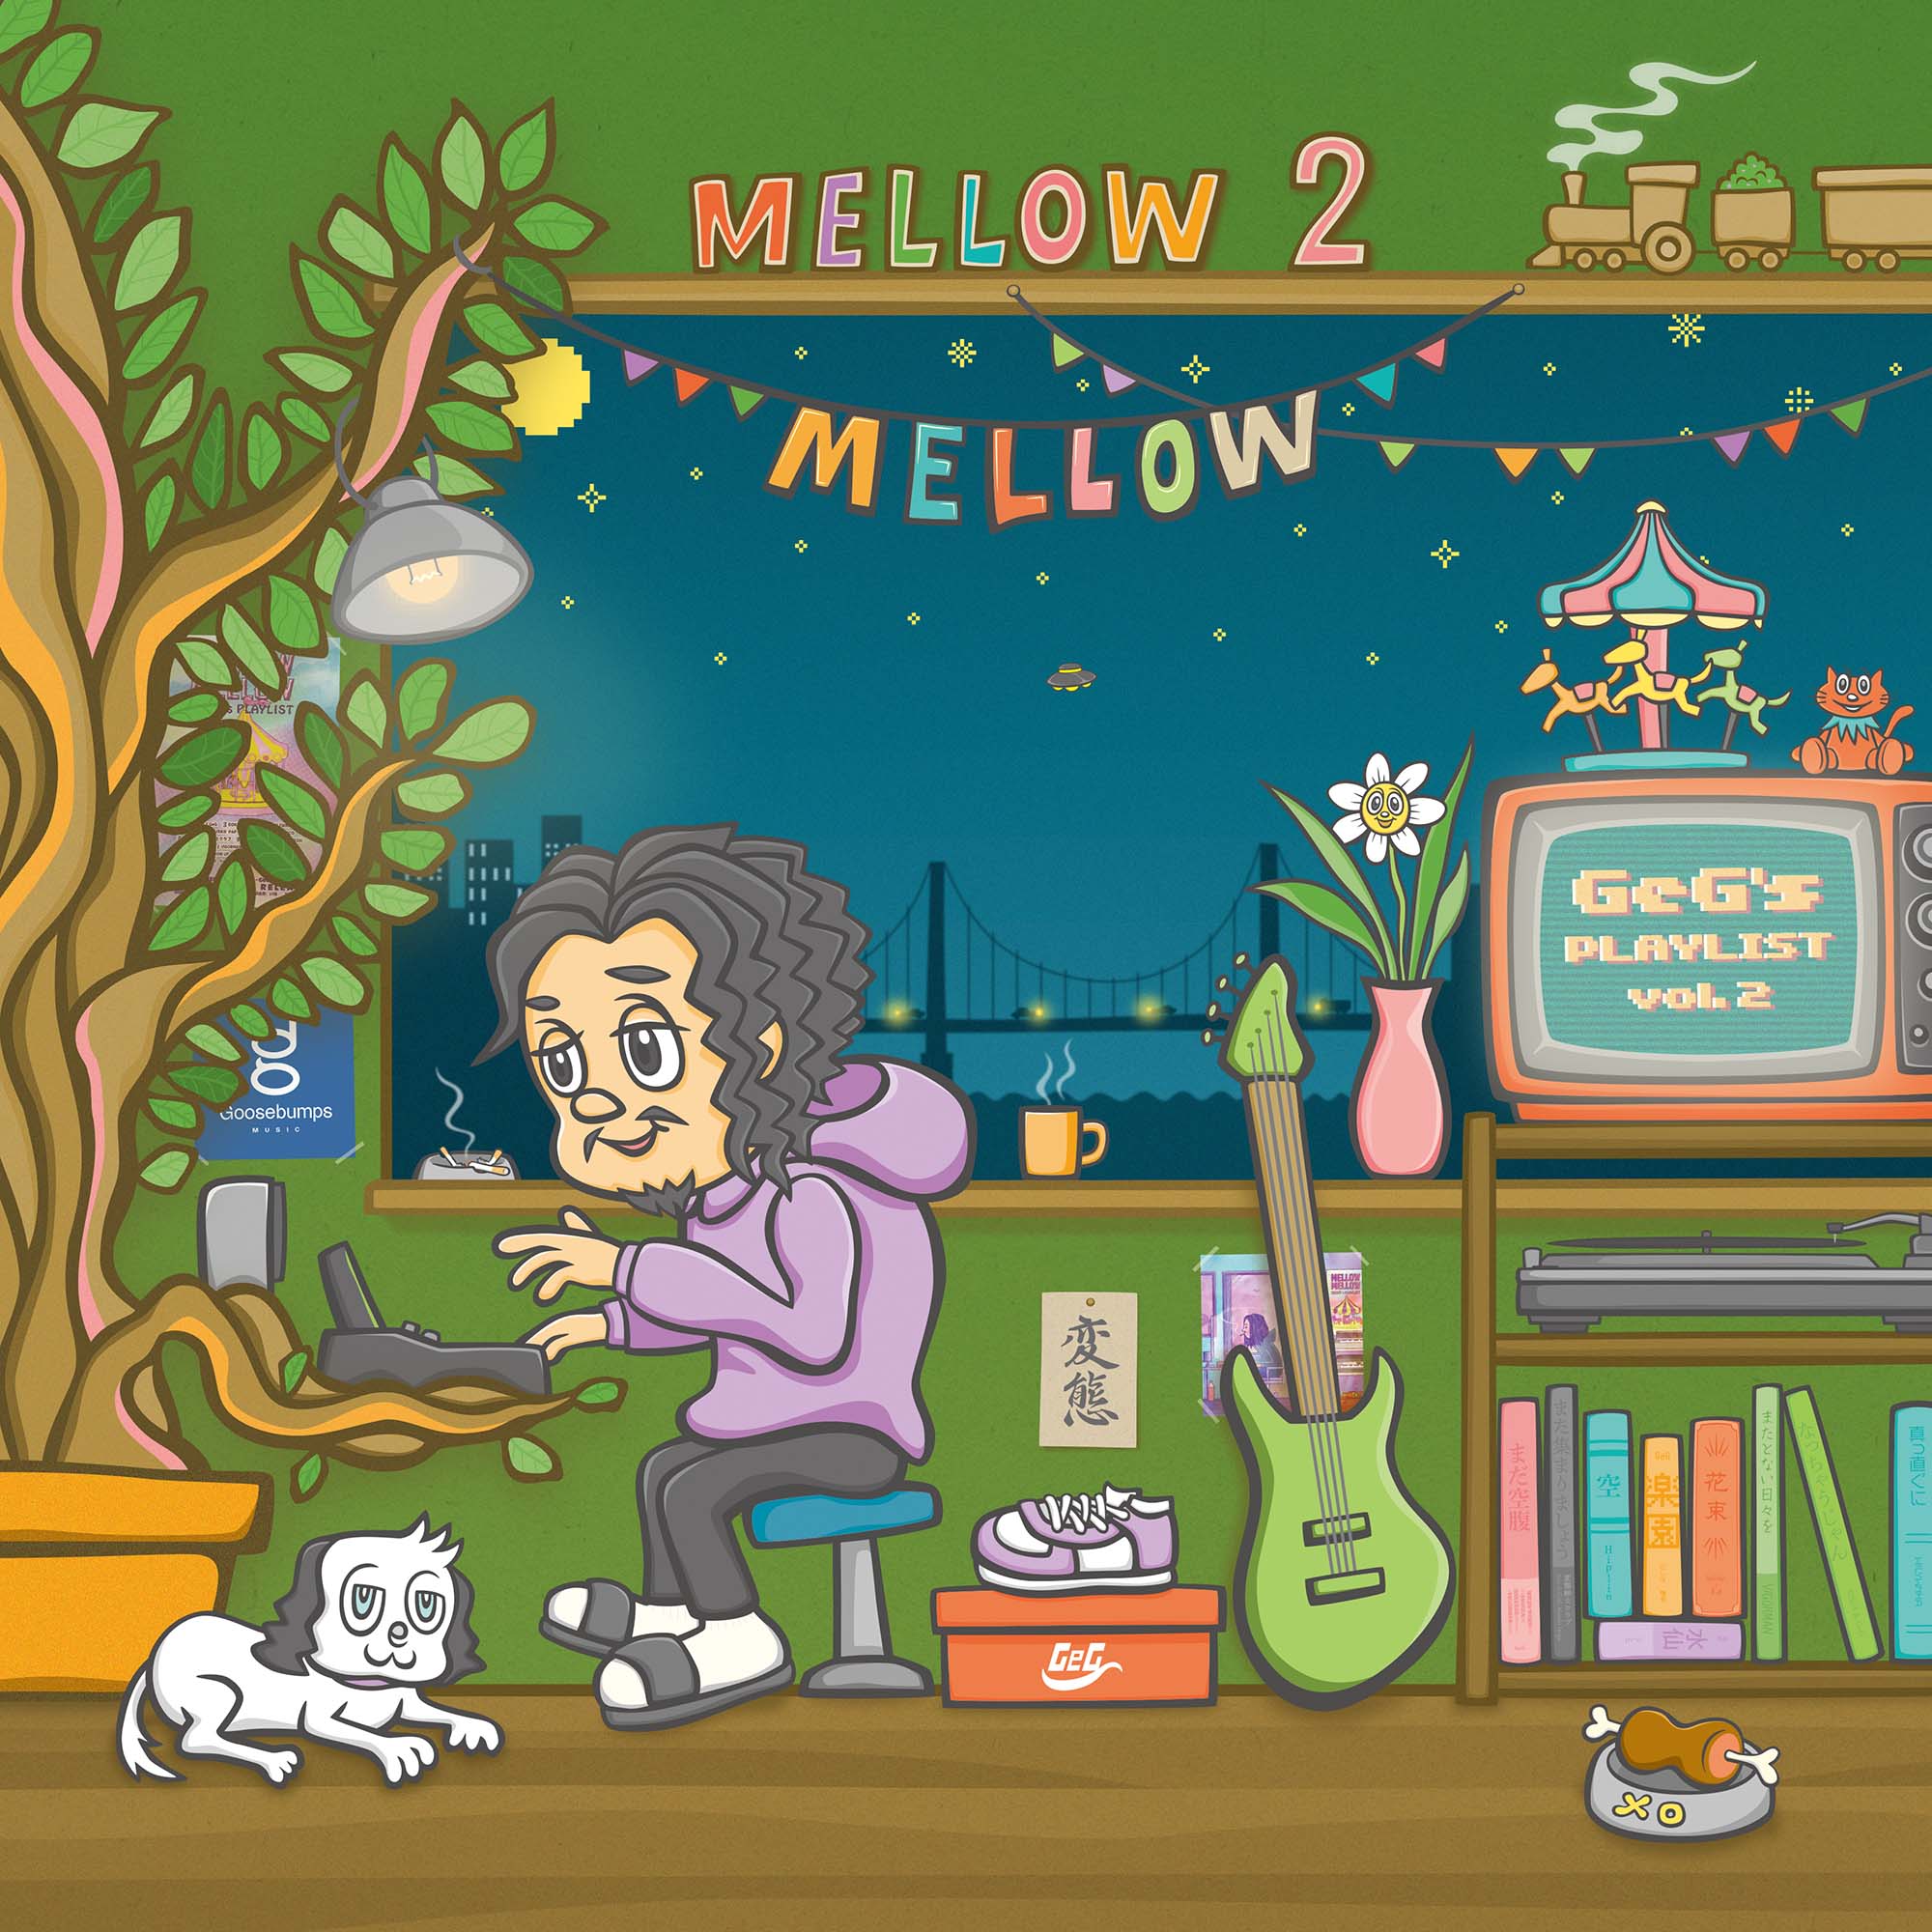 Mellow Mellow~GeG's PLAYLIST vol.2